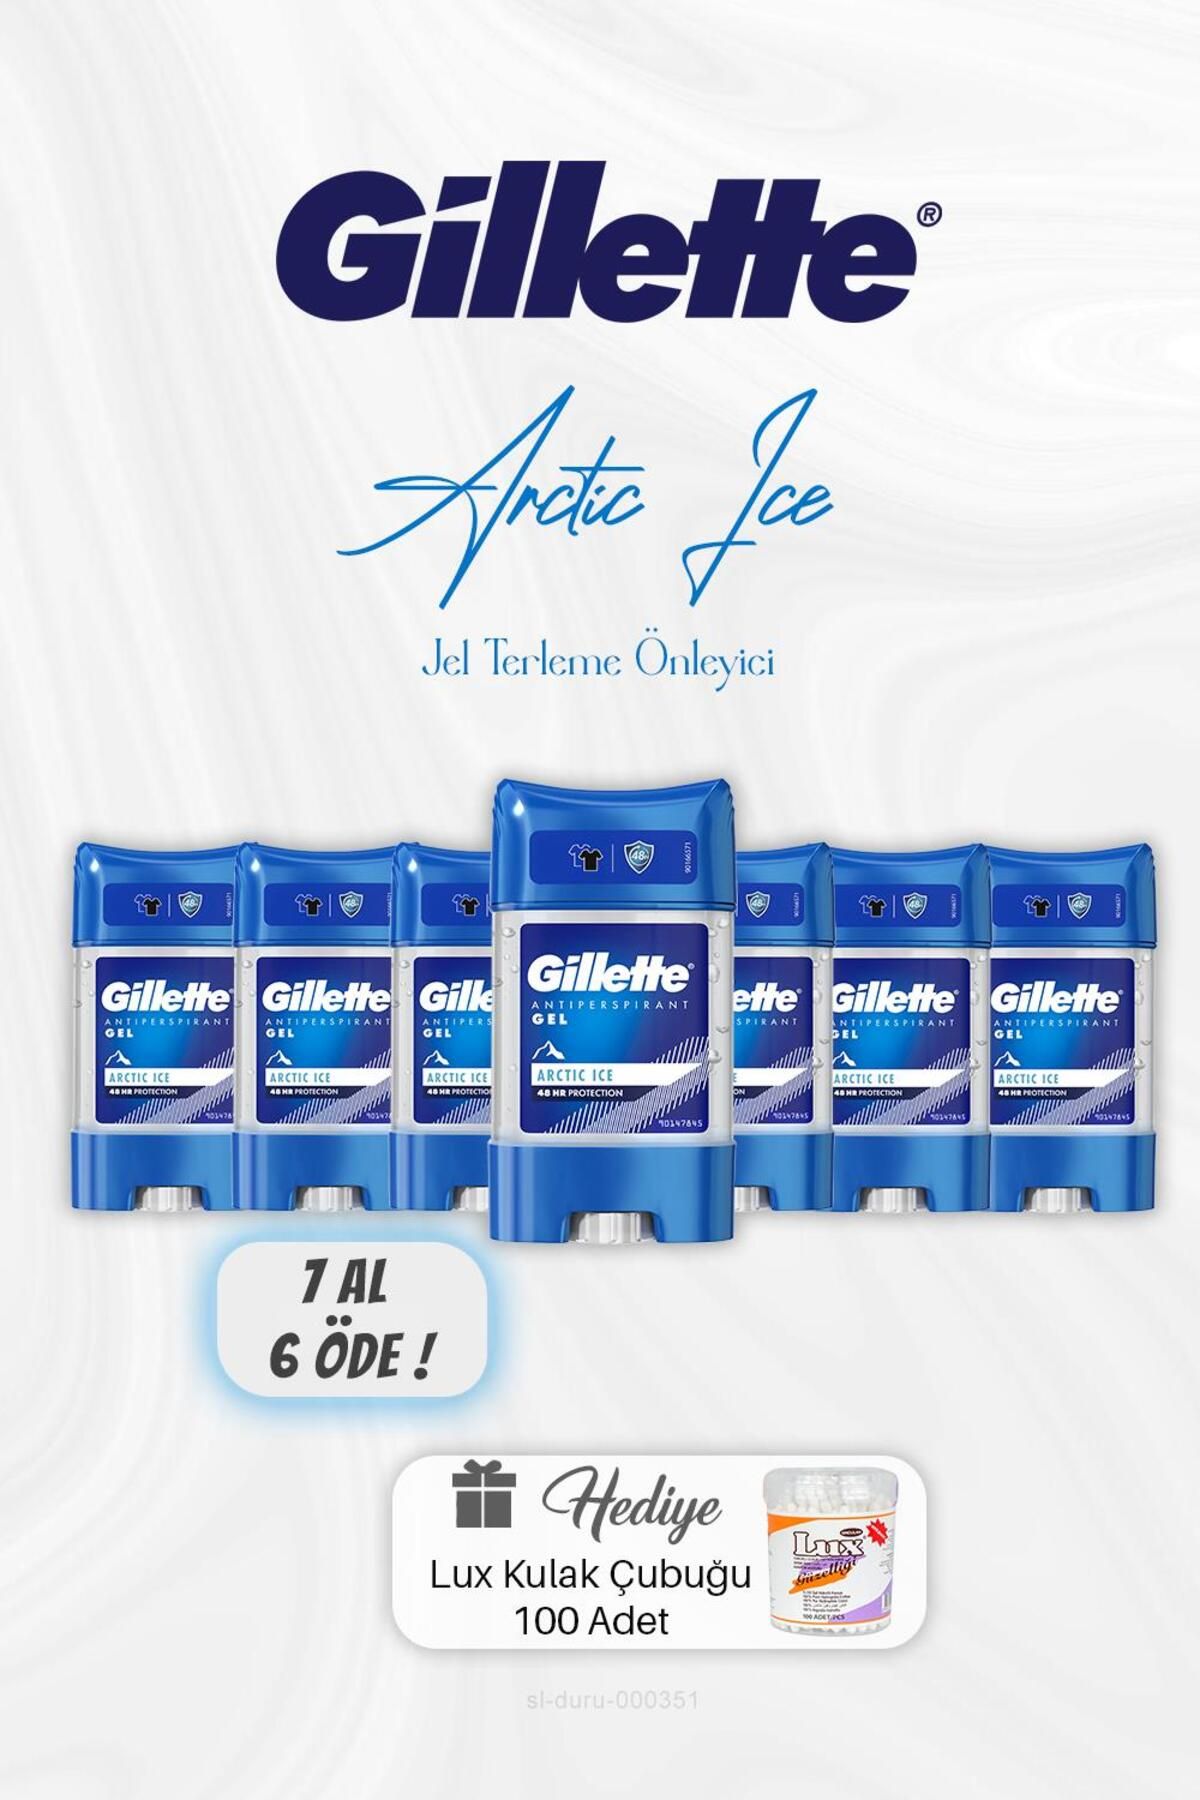 Gillette 7 AL 6 ÖDE Gillette Jel Arctic Ice Terleme Önleyici 70 ml, Kulak Çubuğu Hediyeli